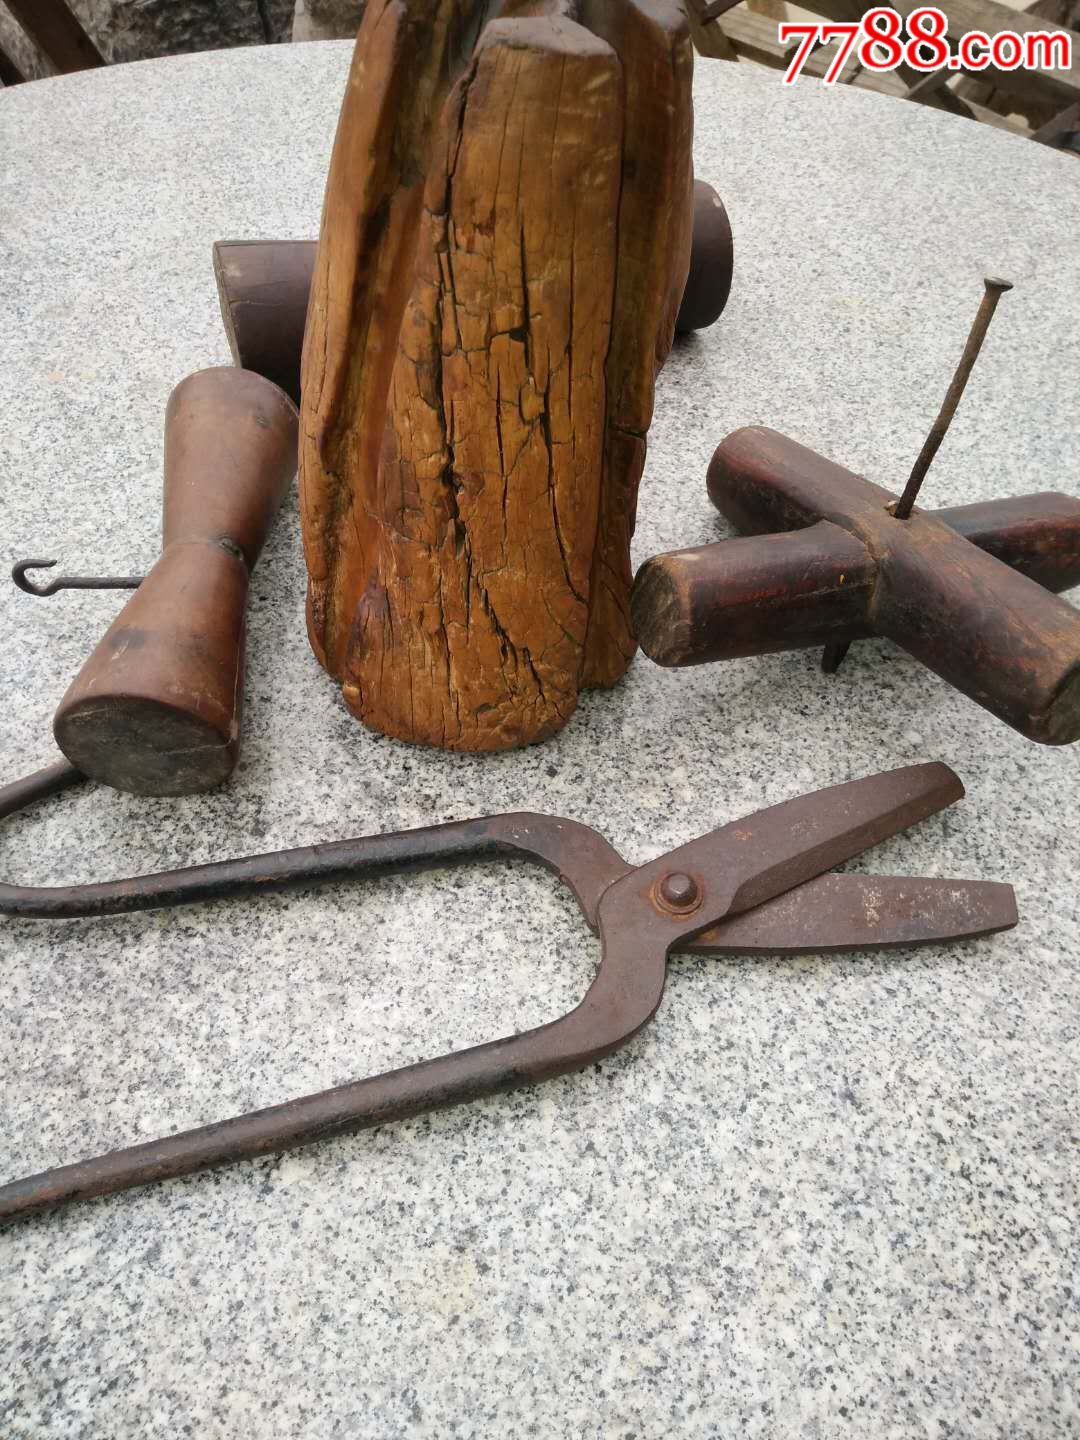 老式拧绳子工具图片